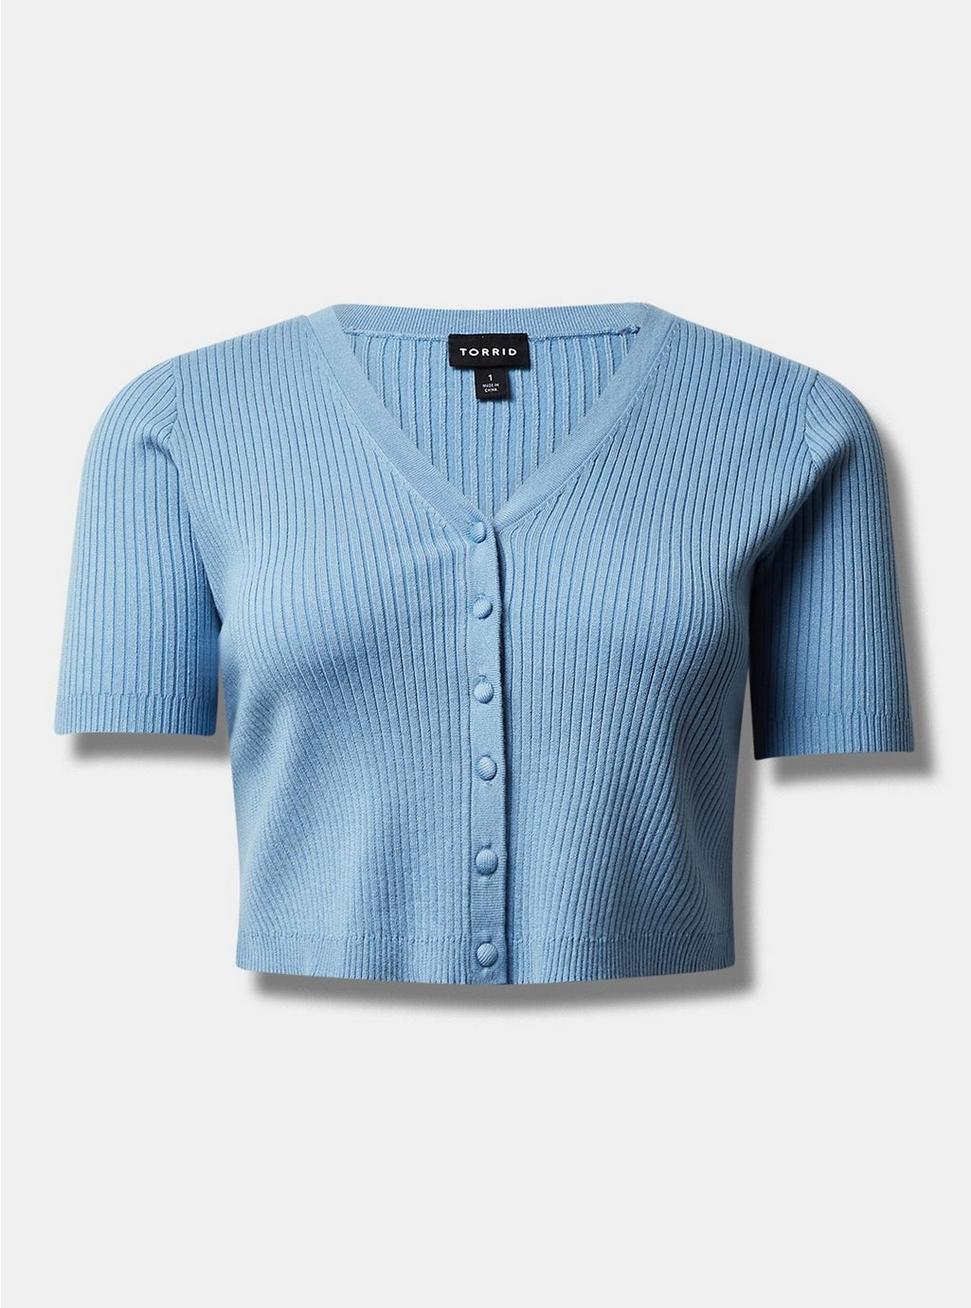 Ribbed Shrug Short Sleeve Sweater, BLISSFUL BLUE, hi-res